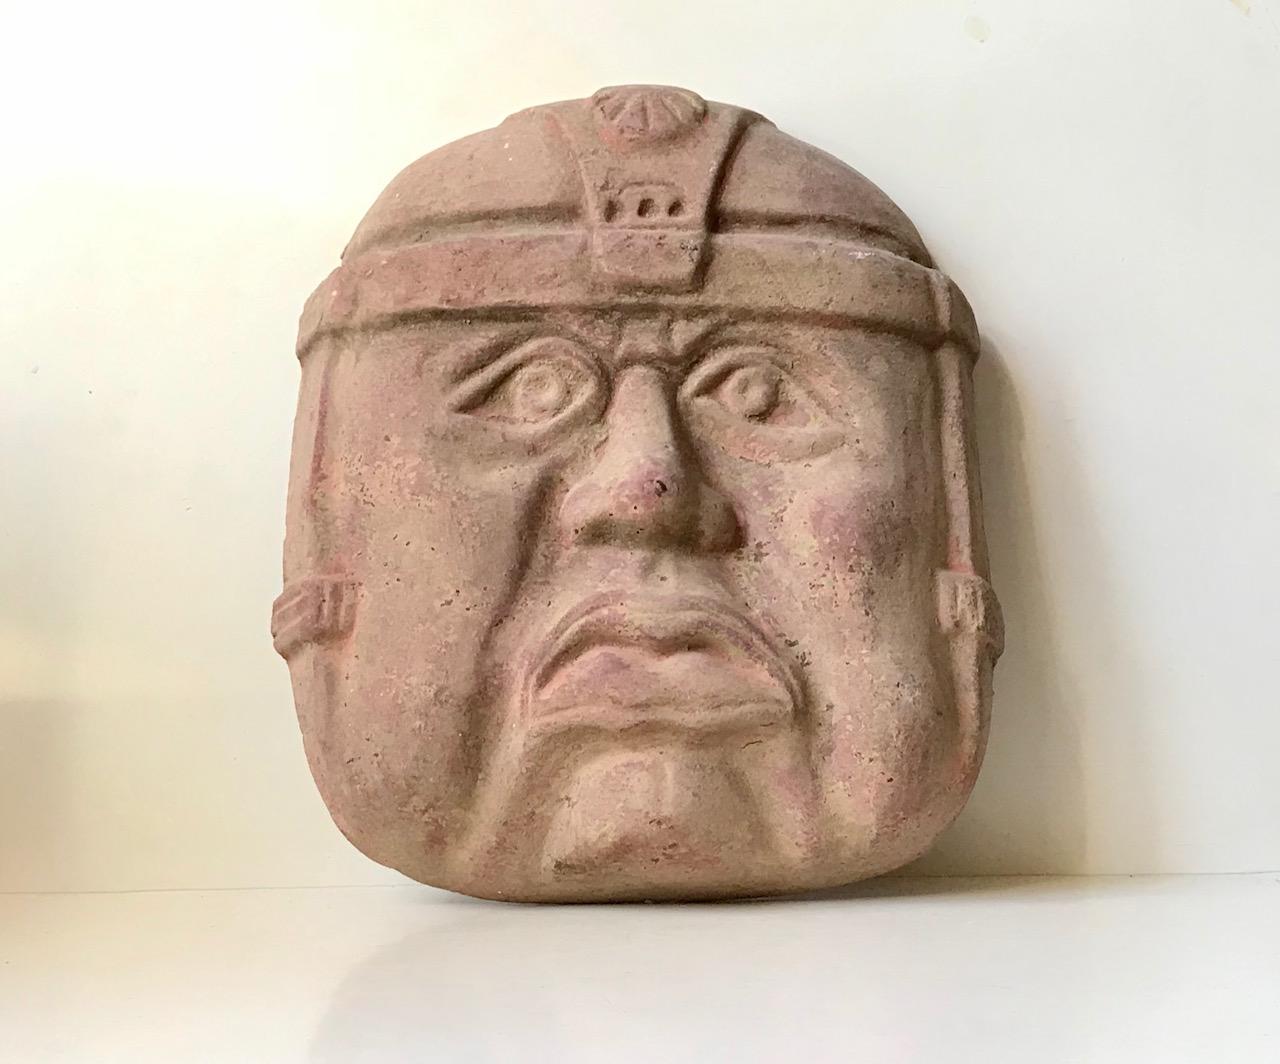 Große (43x36x10 cm) rohe Terrakotta-Wandmaske eines olmekischen Kriegers. Die Olmeken waren eine prä-kulumbianische, mesoamerikanische Zivilisation, die von 1200-400 v. Chr. lebte. Bei diesem Exemplar handelt es sich um eine Reproduktion aus den